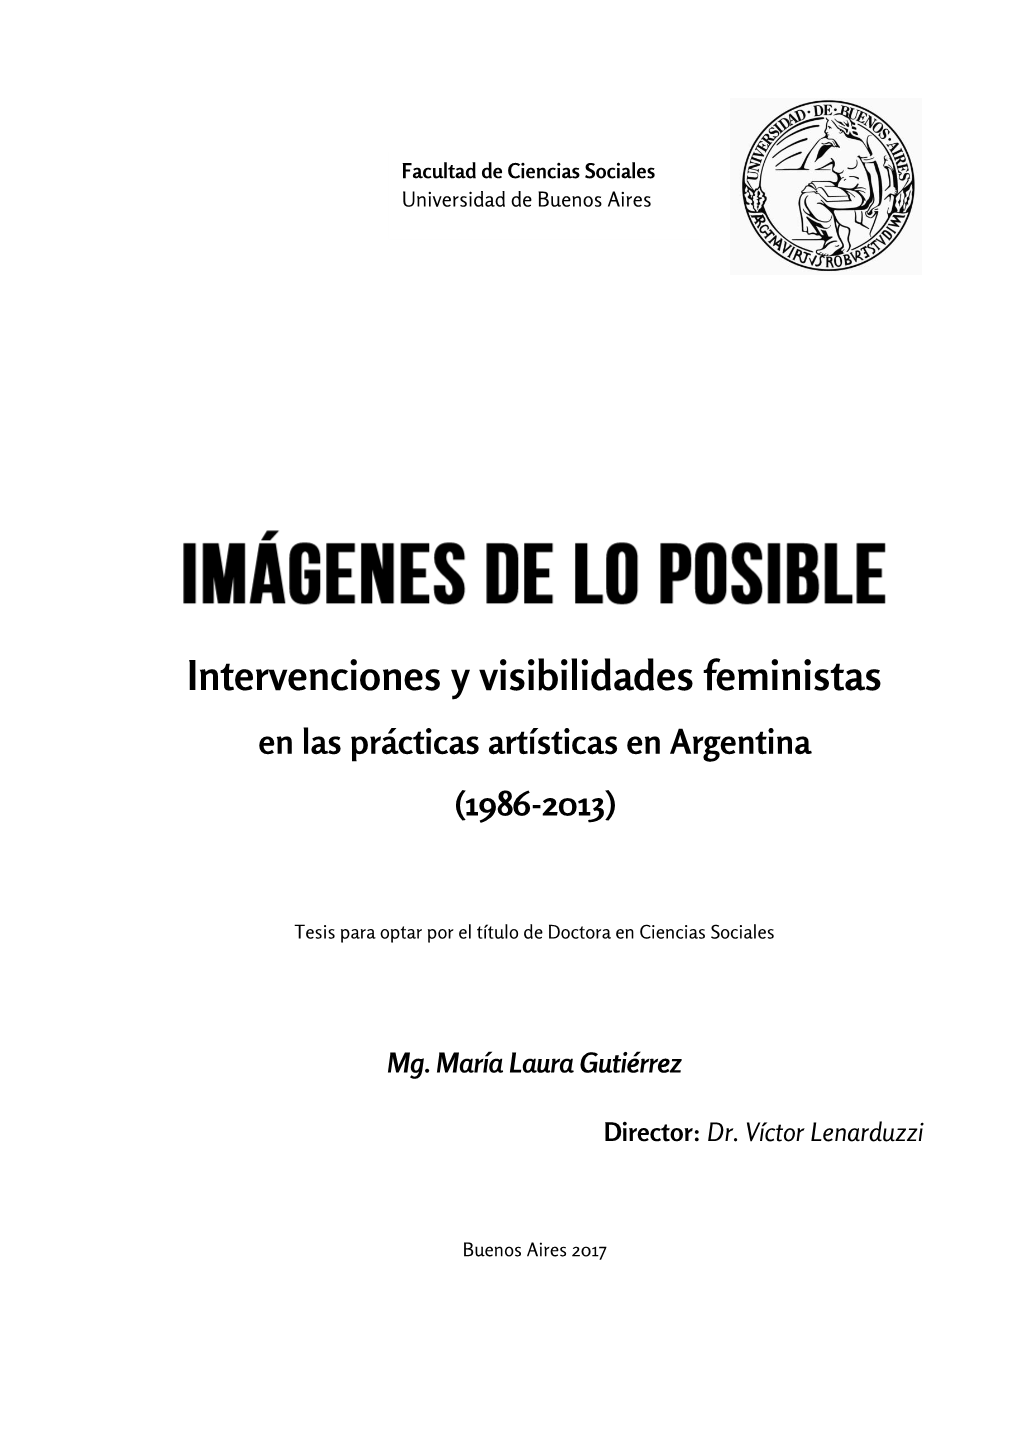 Intervenciones Y Visibilidades Feministas En Las Prácticas Artísticas En Argentina (1986-2013)